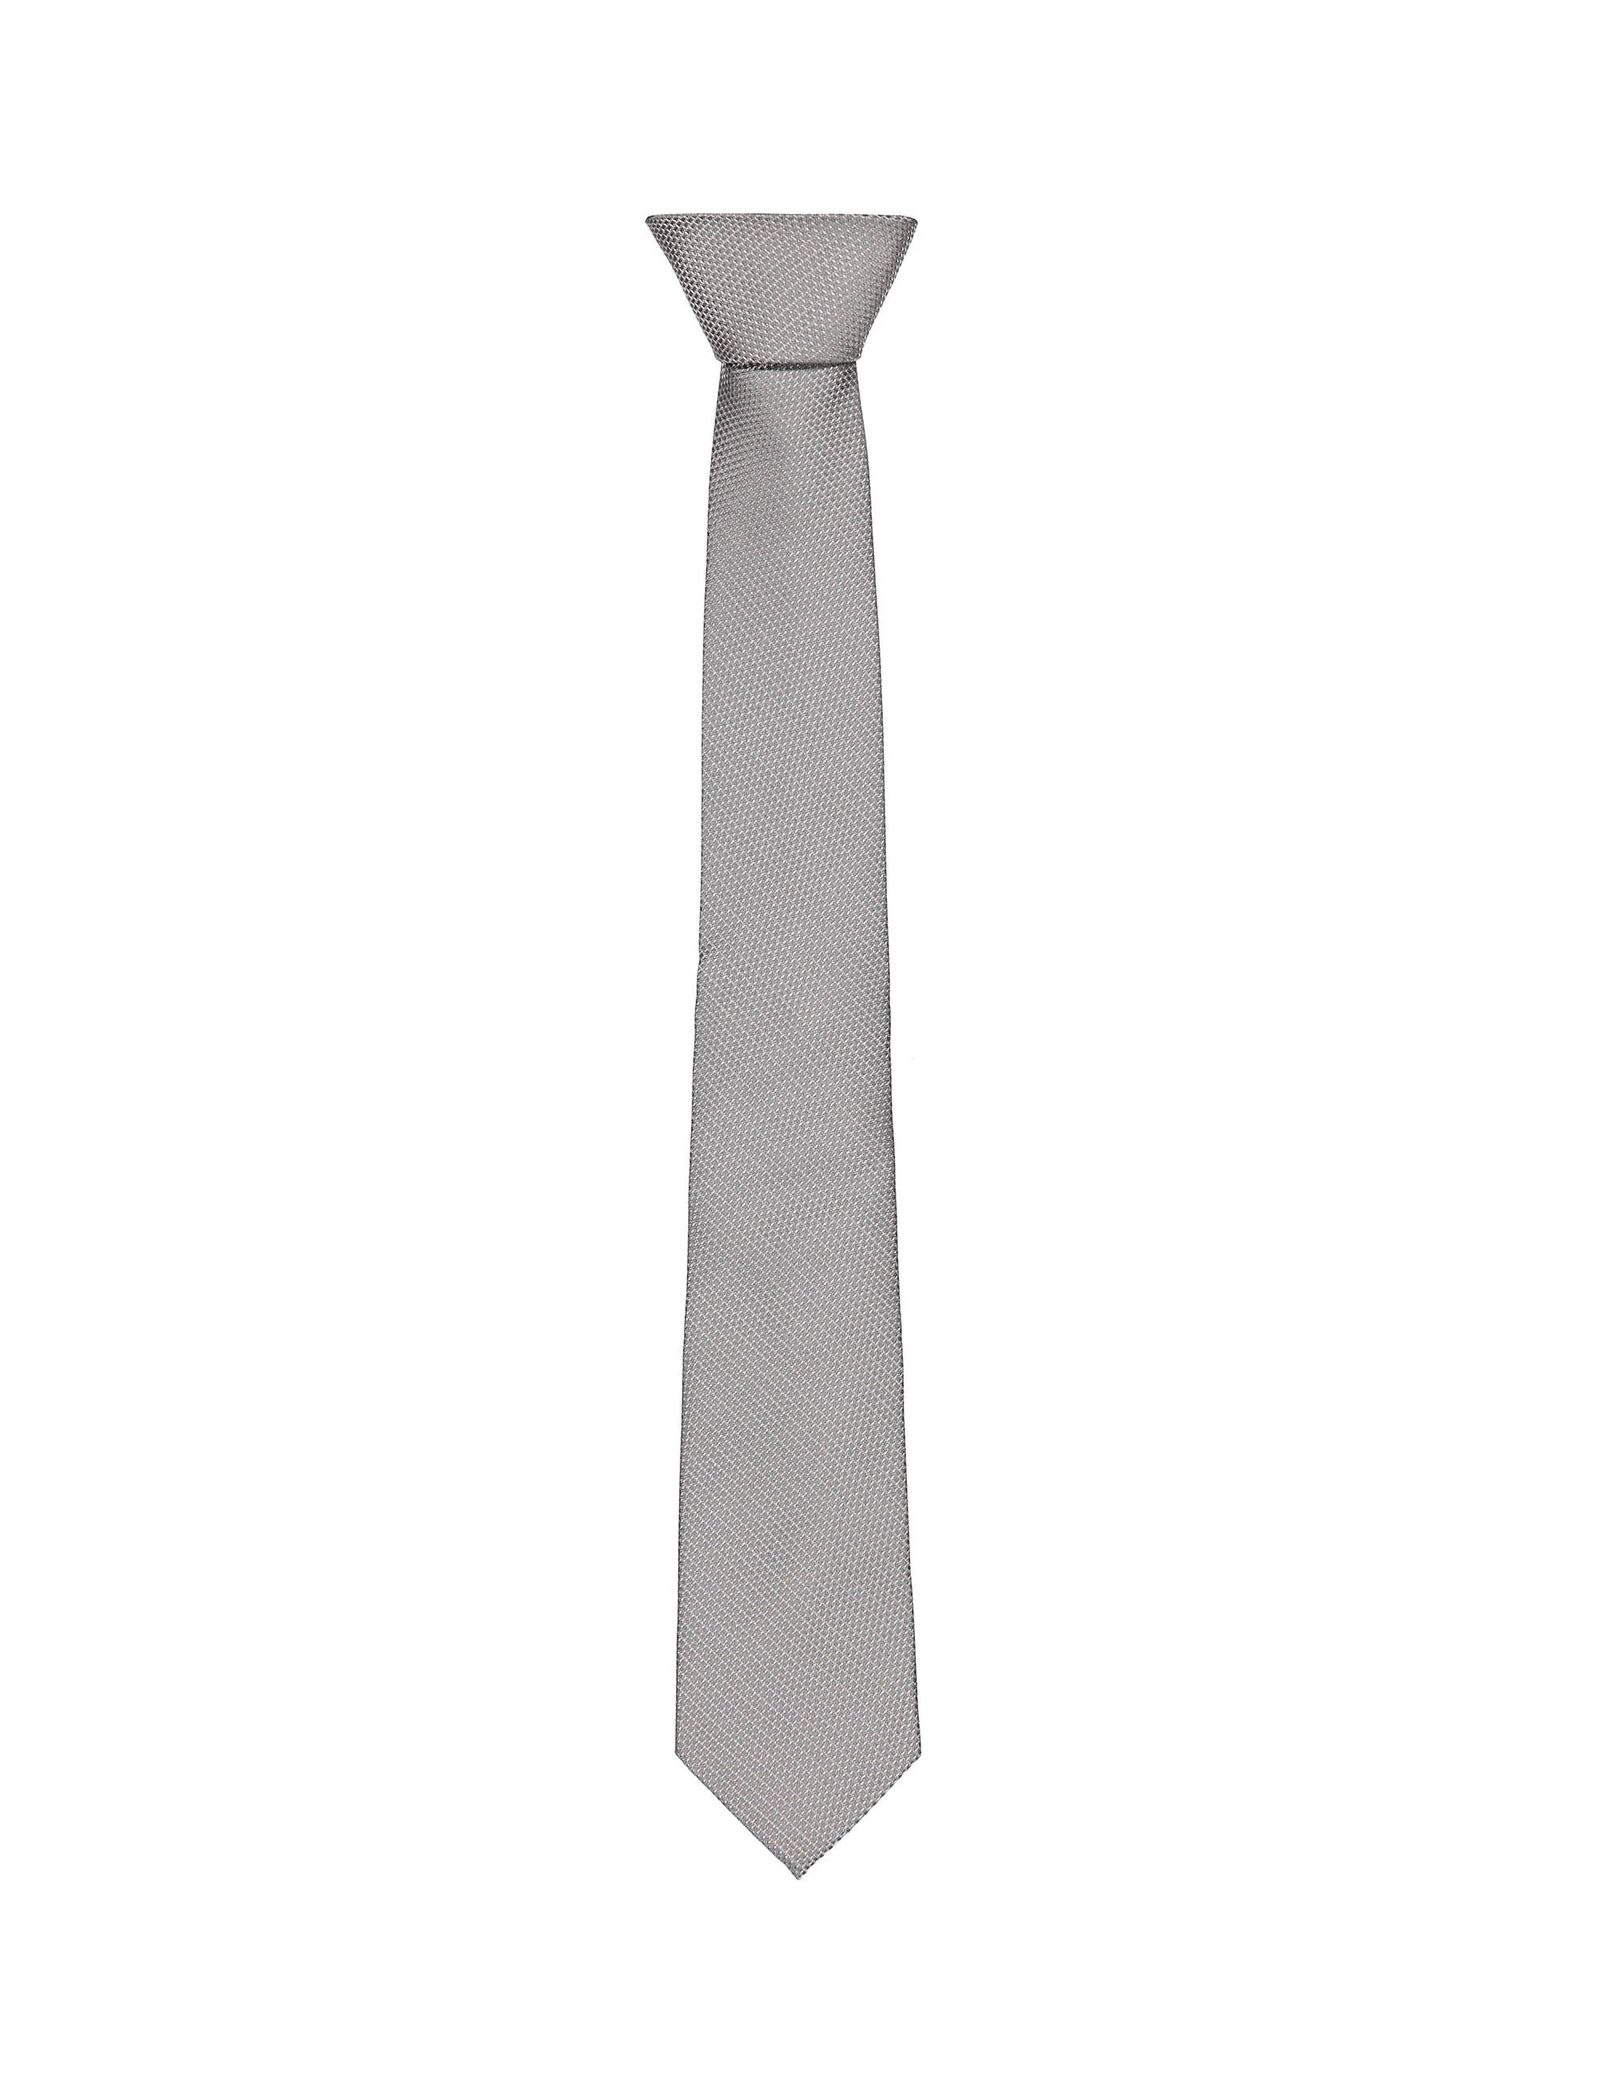 کراوات طرحدار مردانه - مانگو - طوسي - 2